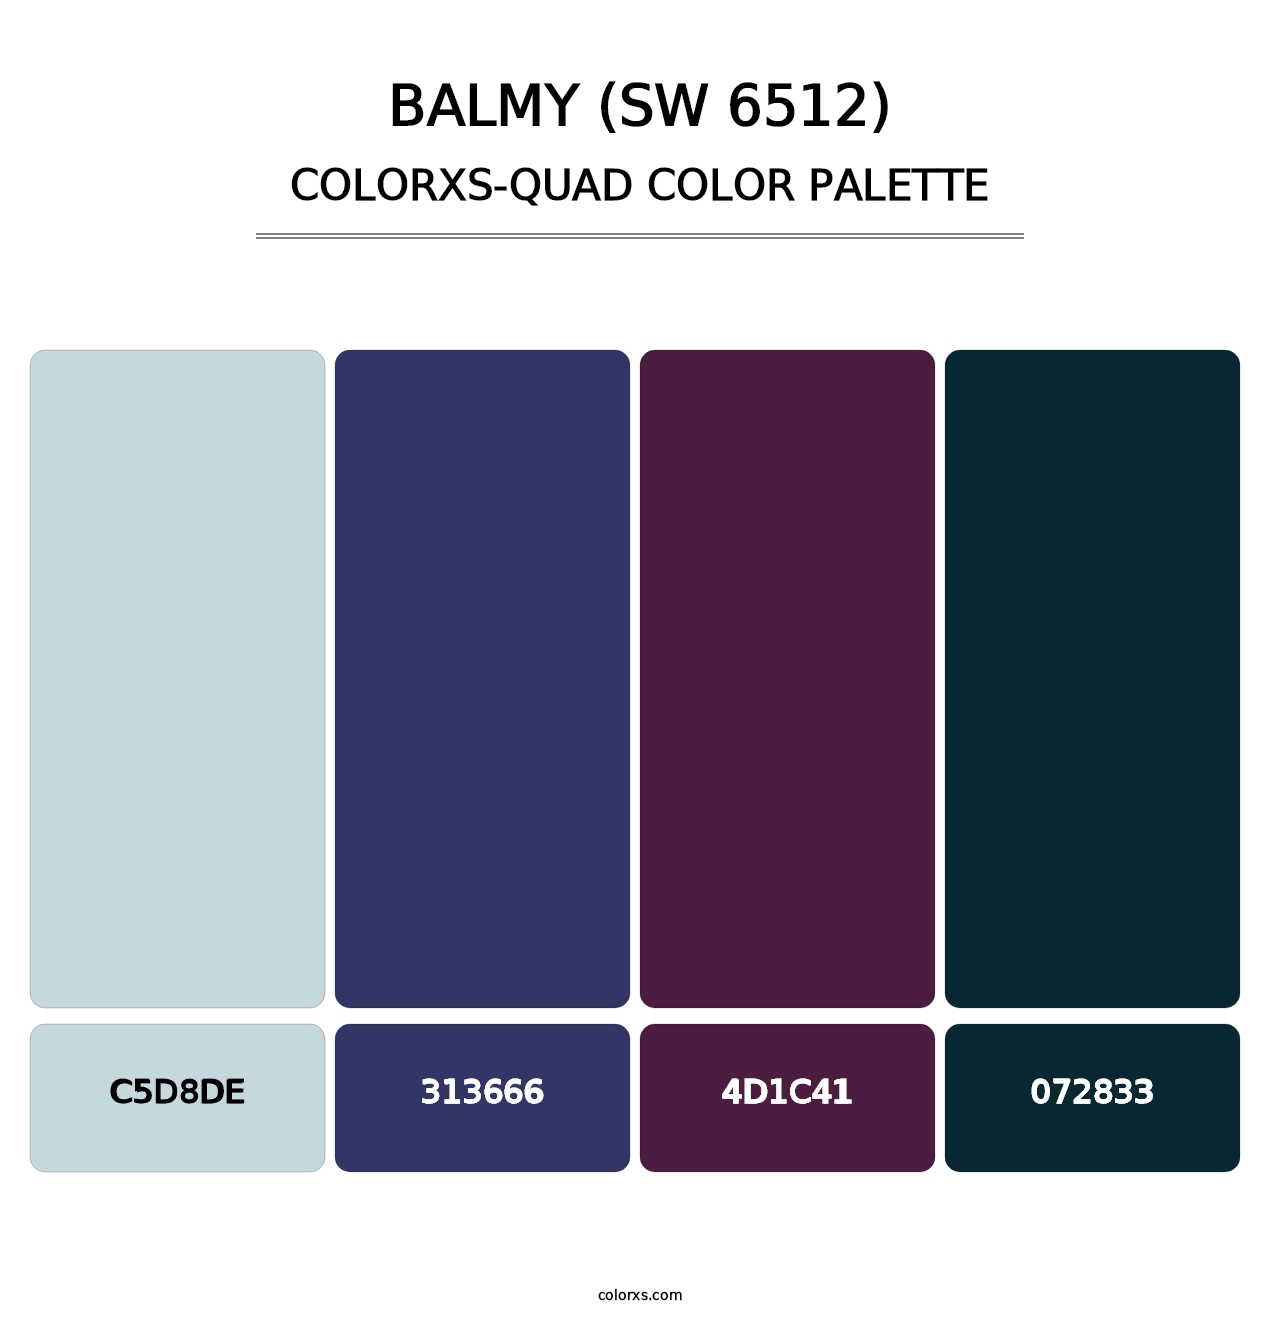 Balmy (SW 6512) - Colorxs Quad Palette